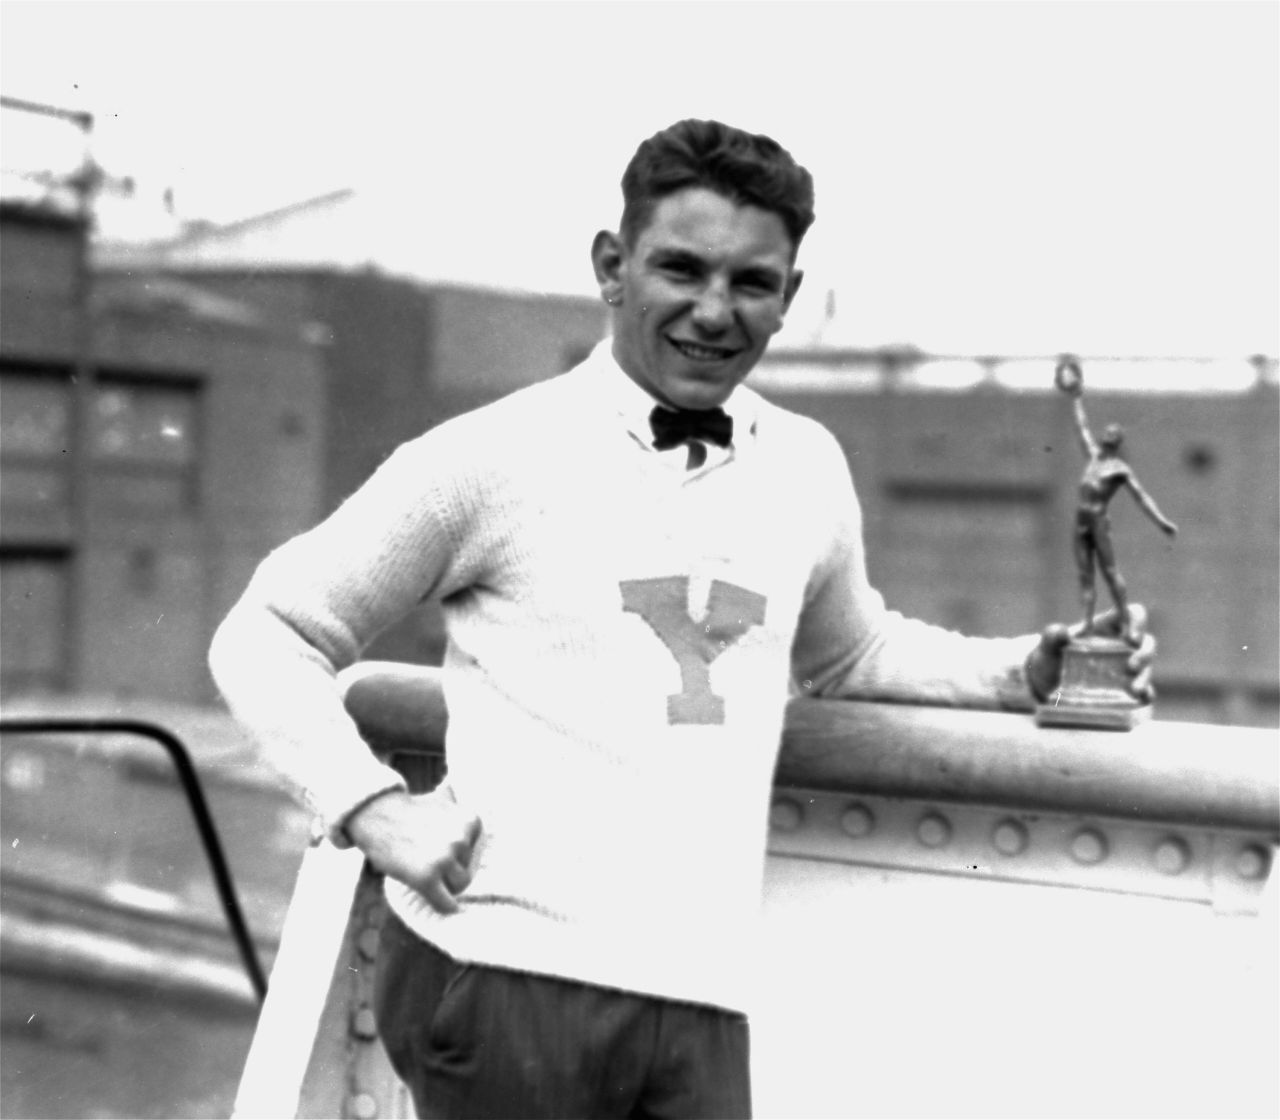 Gold im Sommer und Winter: Verschiedene Athletinnen und Athleten nahmen im Laufe der Jahre sowohl an Winter- als auch an Sommerspielen teil und gewannen jeweils in einer anderen Disziplin eine Goldmedaille. Dem US-Amerikaner Edward Eagan gelang das zuerst. Er gewann 1920 in Antwerpen Gold im Boxen und 1932 in Lake Placid im Viererbob.